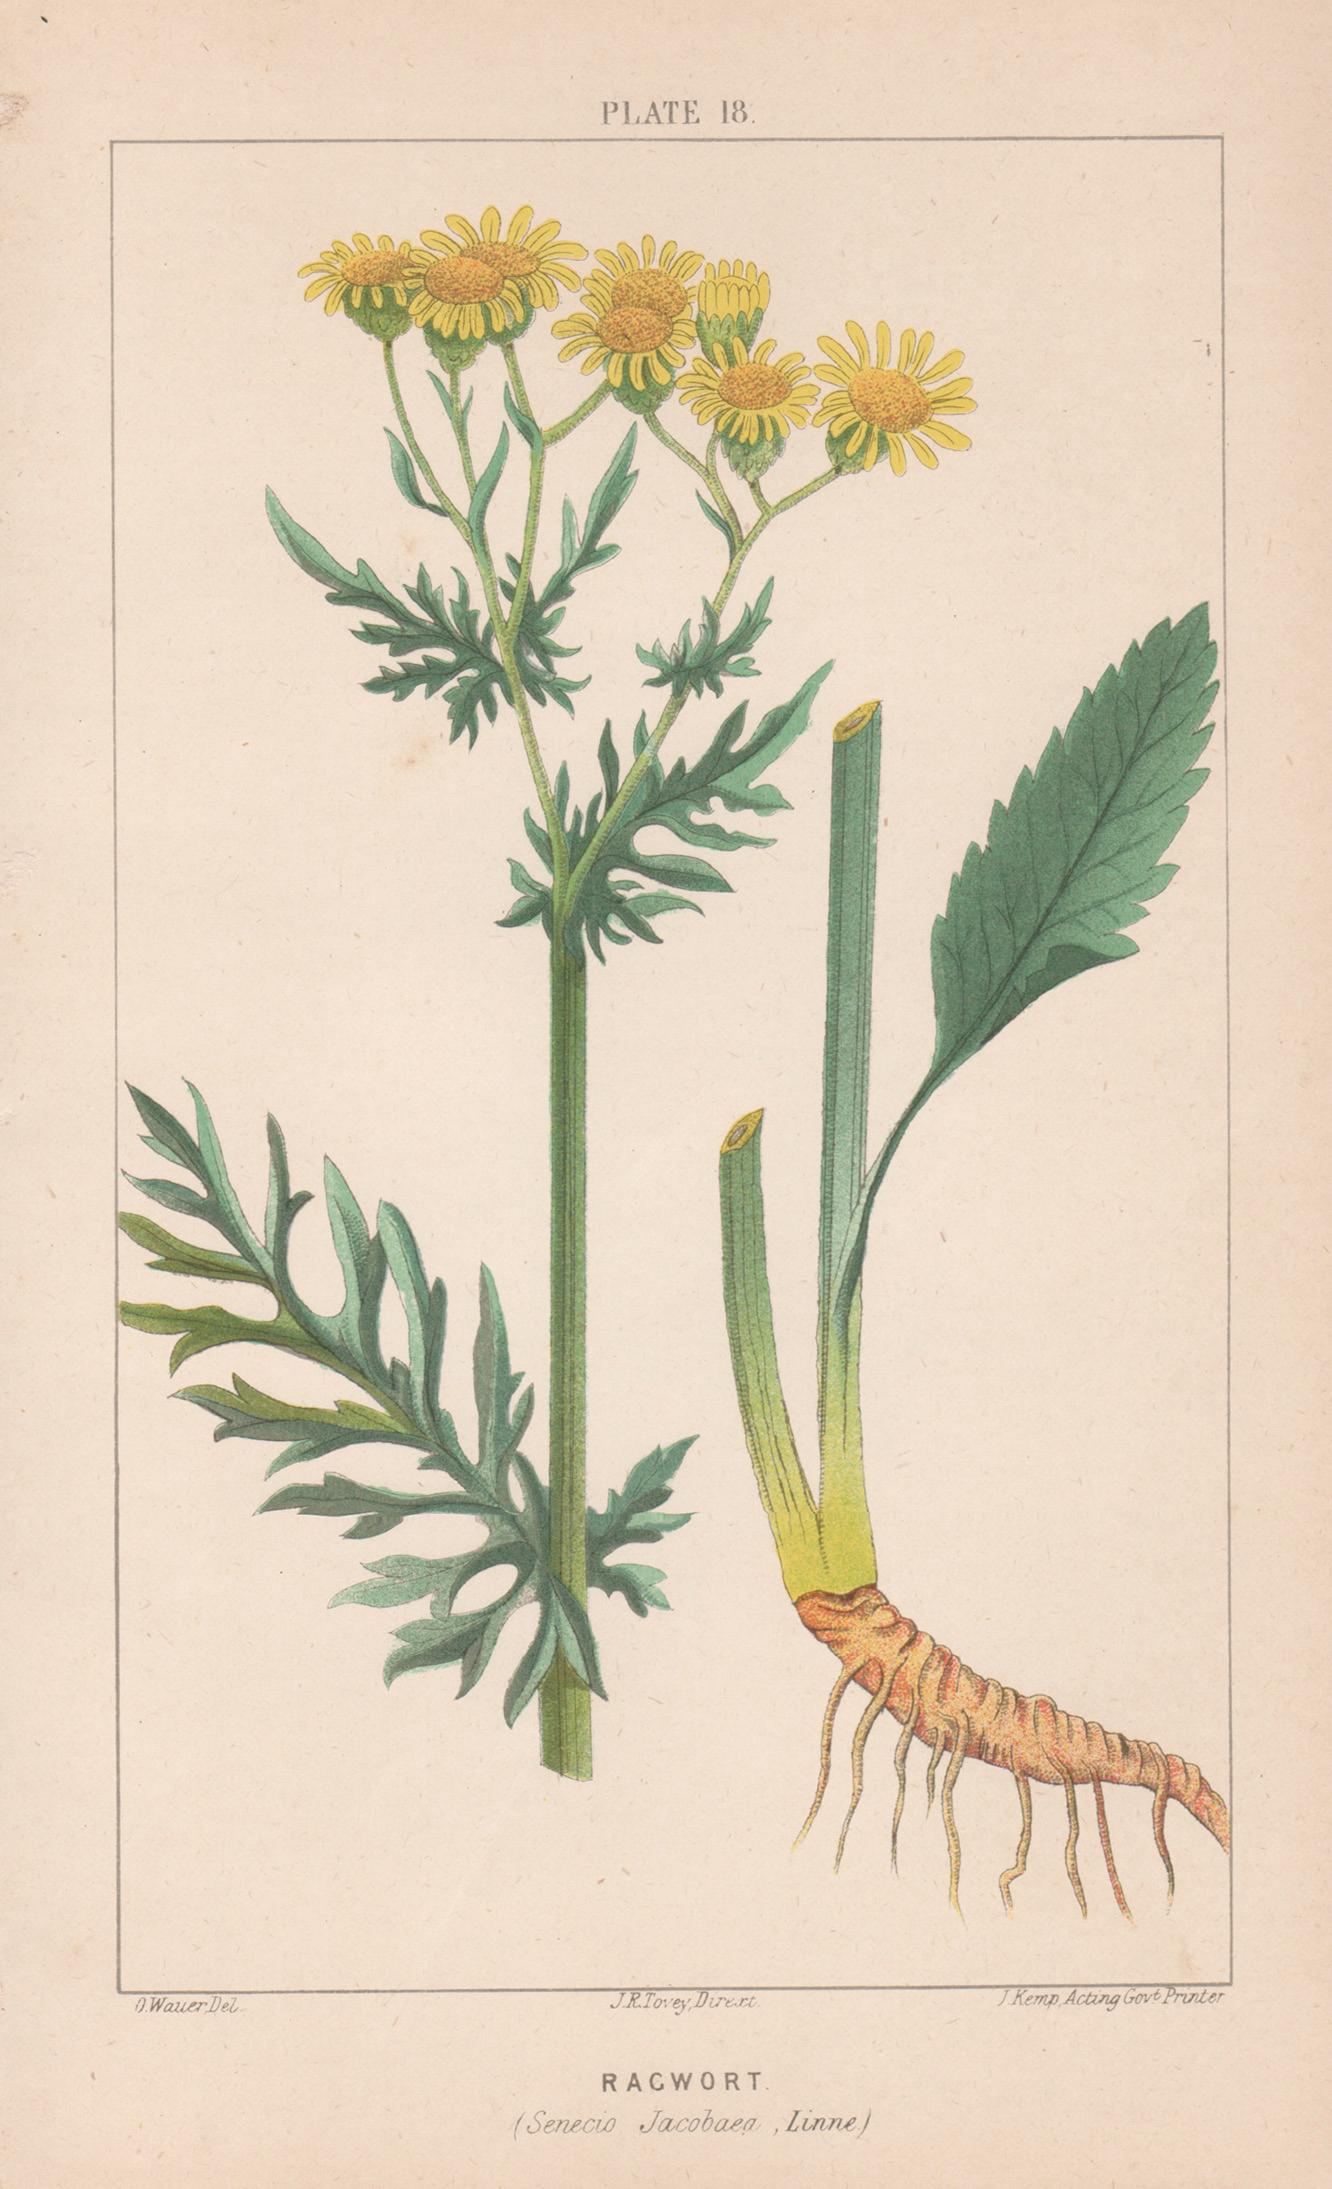 O Wauer Print - Ragwort (Senecio Jacobaea), antique botanical lithograph